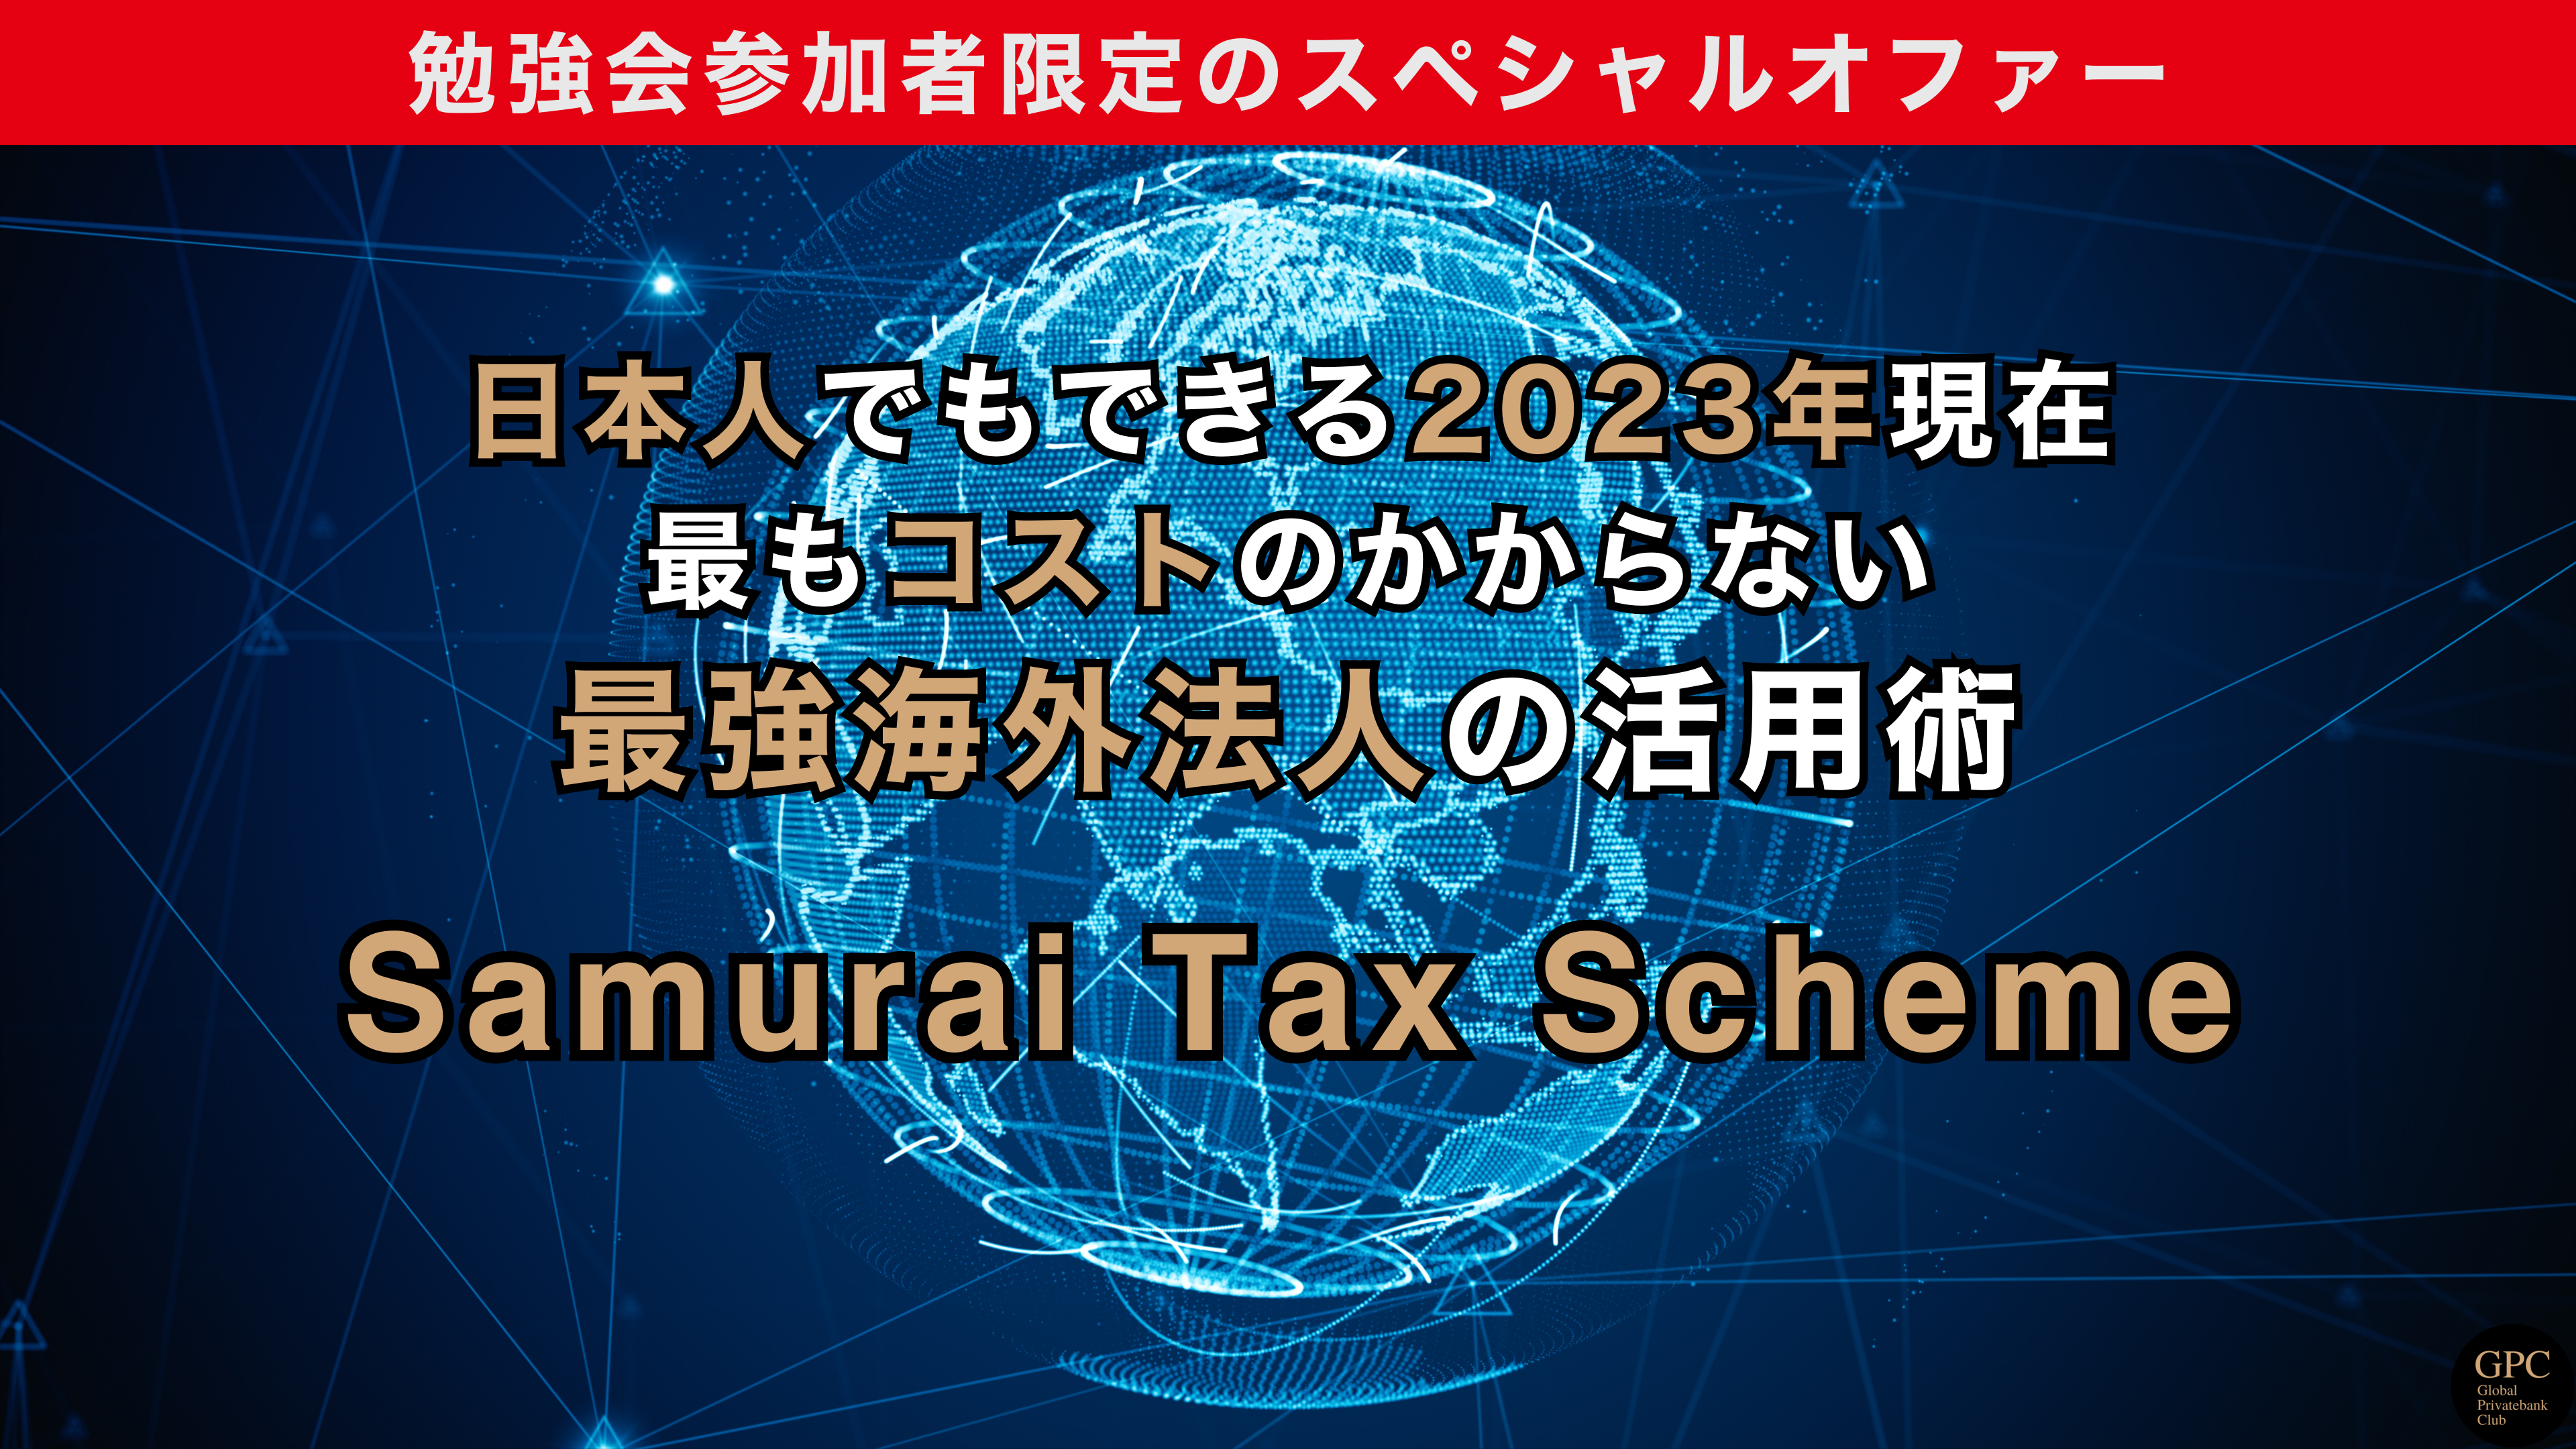 Samurai Tax Scheme (640 × 1136 px)-202308勉強会